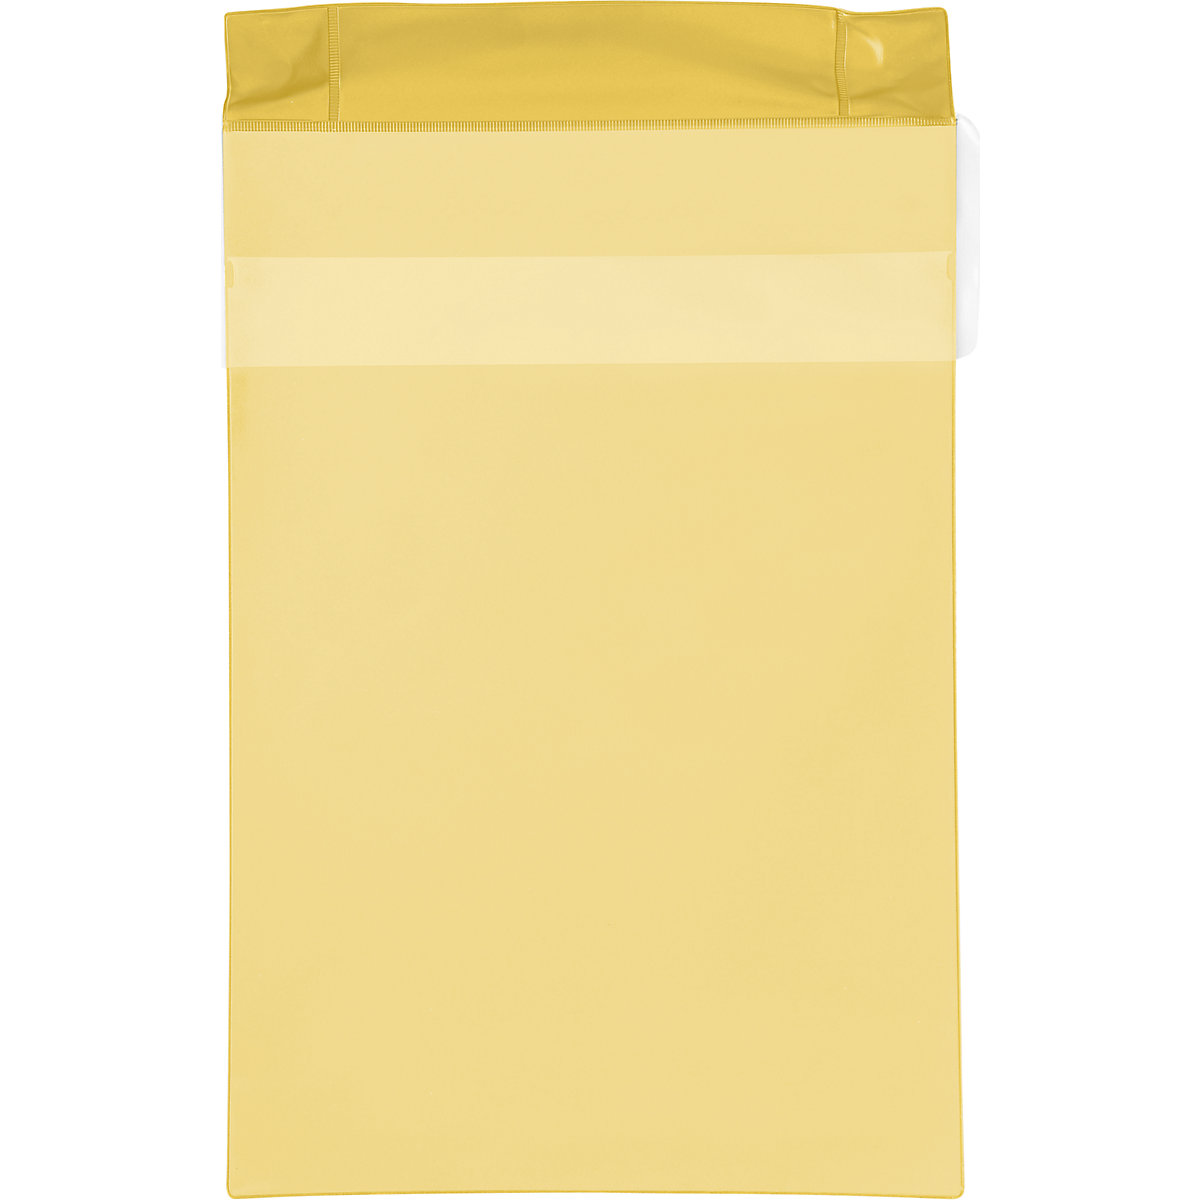 Magnettaschen Neodym, Hochformat, mit Regenschutzklappe, VE 25 Stk, gelb, DIN A4, ab 1 VE